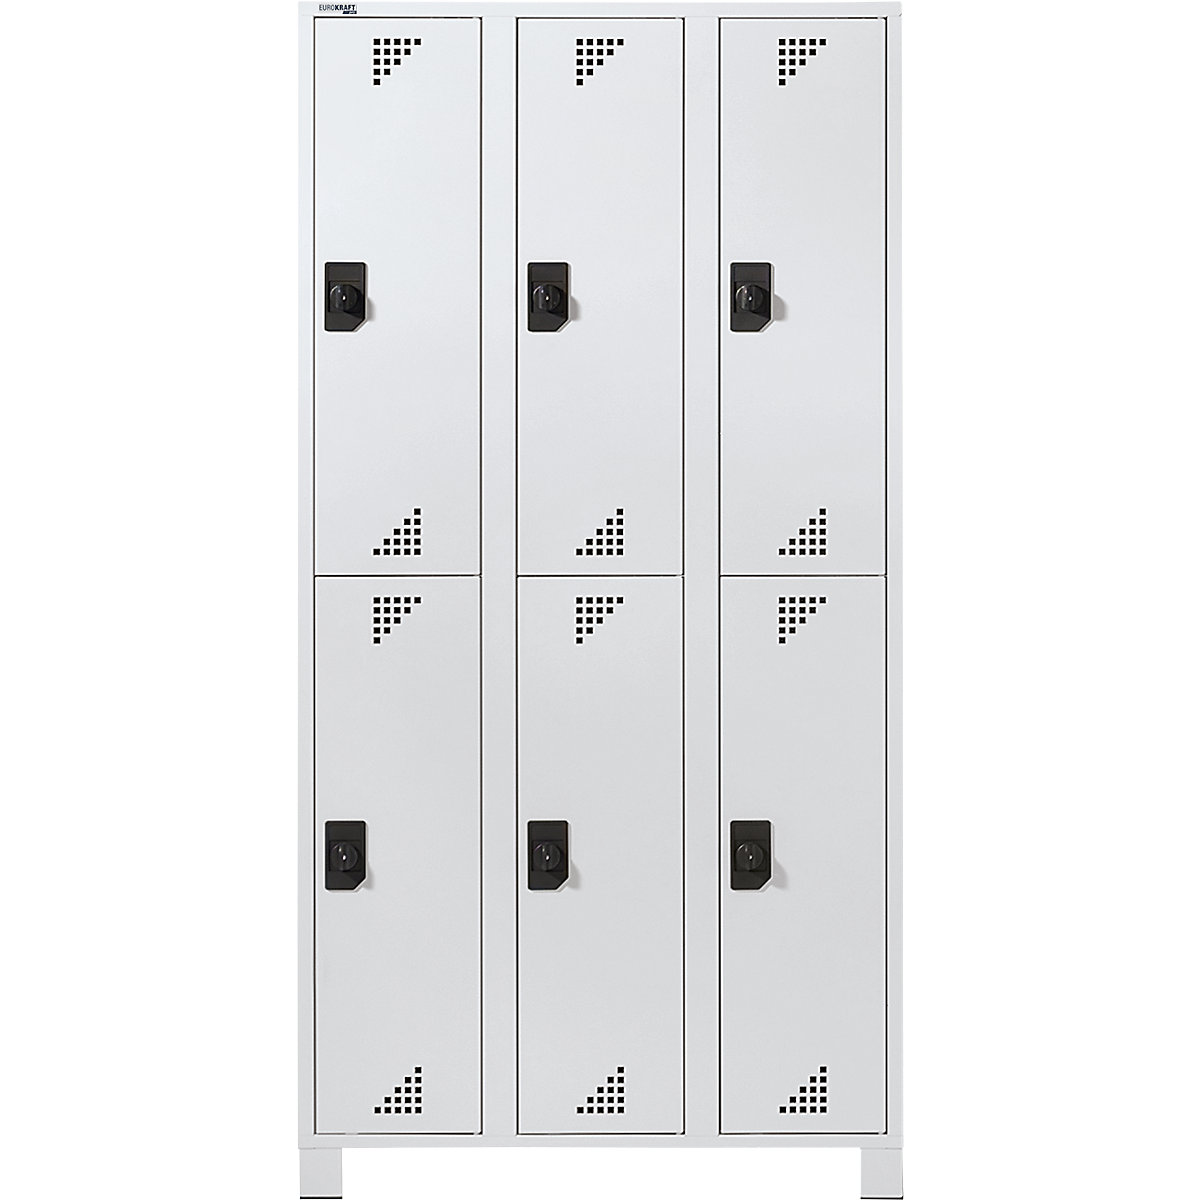 Šatní skříň s oddíly v poloviční výšce – eurokraft pro, v x š x h 1800 x 900 x 500 mm, 6 oddílů, kompletně světle šedá